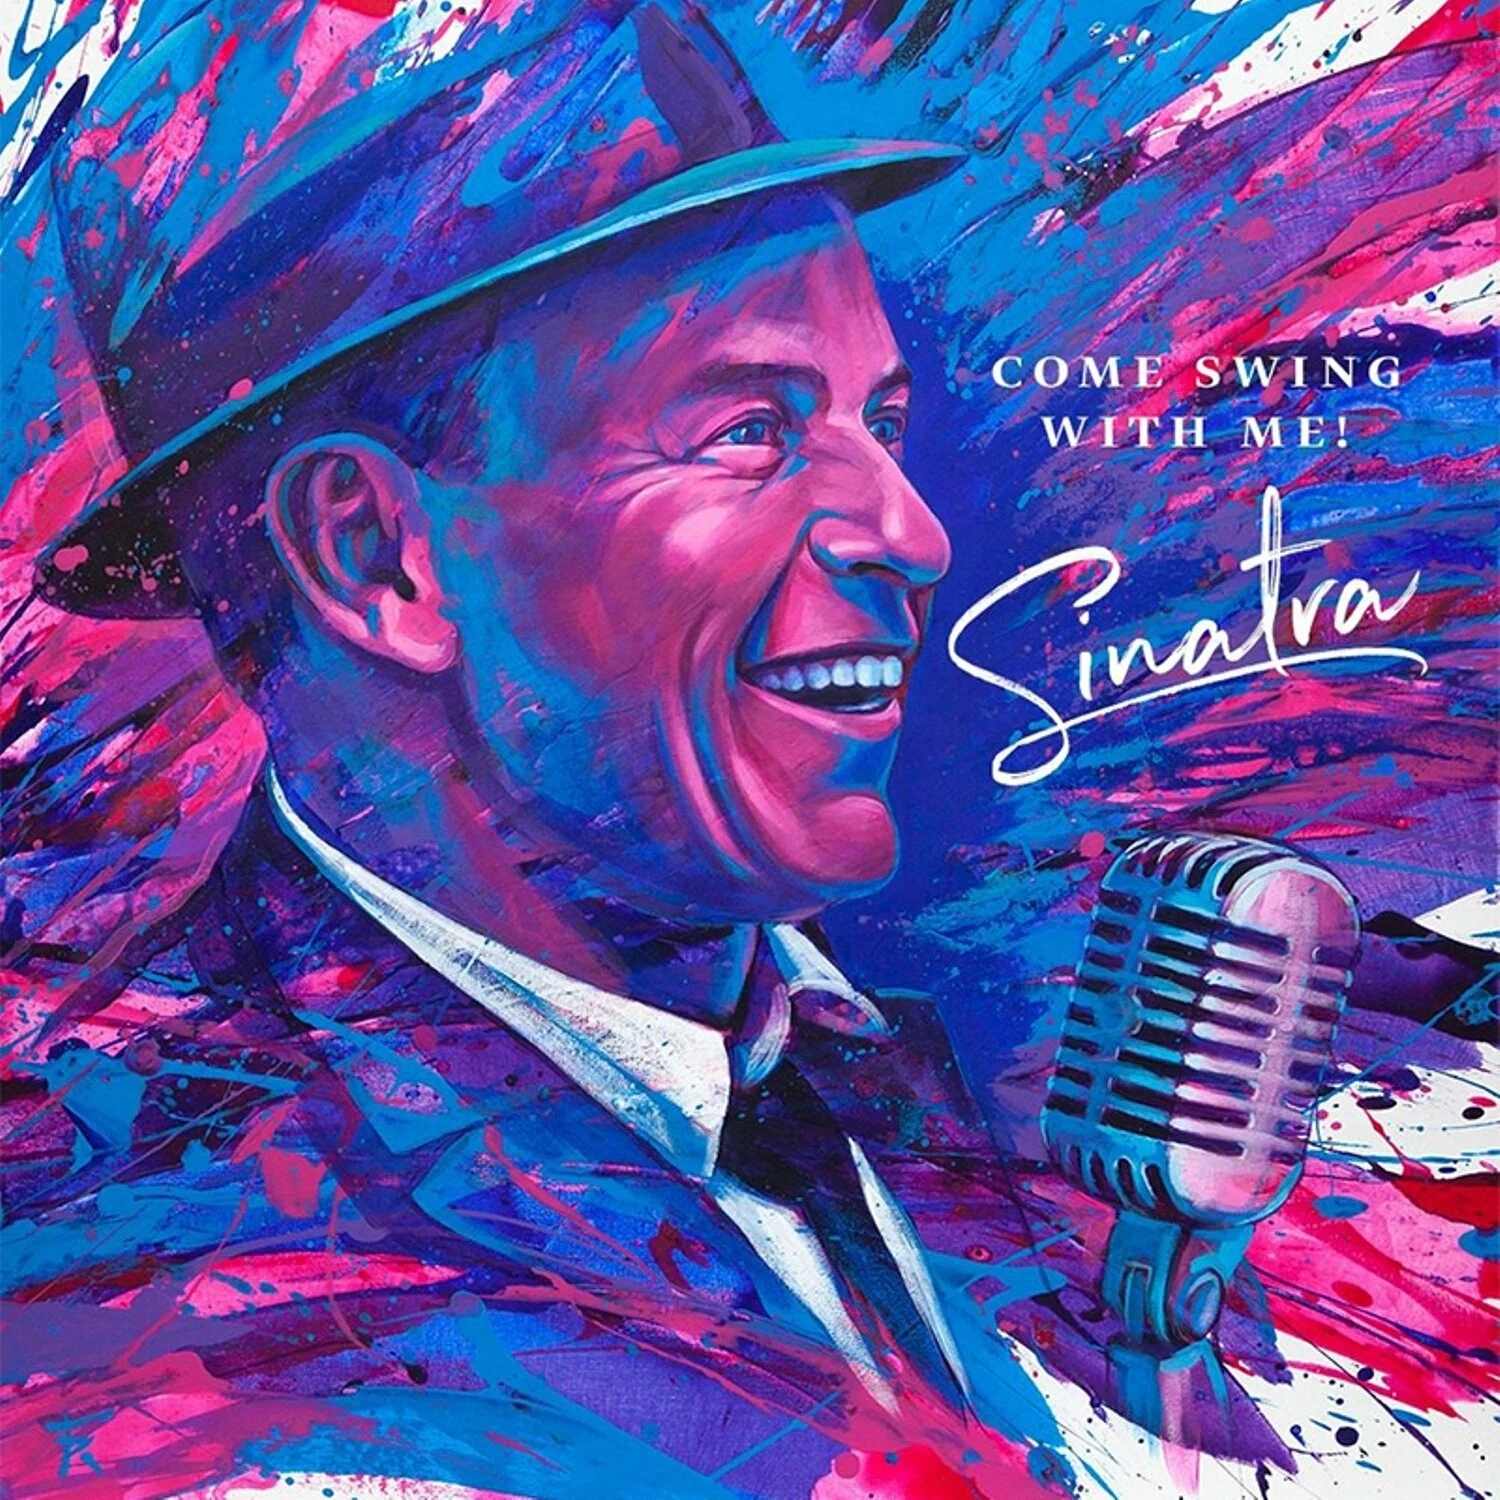 Виниловая Пластинка Sinatra, Frank, Come Swing With Me (4601620108730) виниловая пластинка frank sinatra come swing with me lp stereo